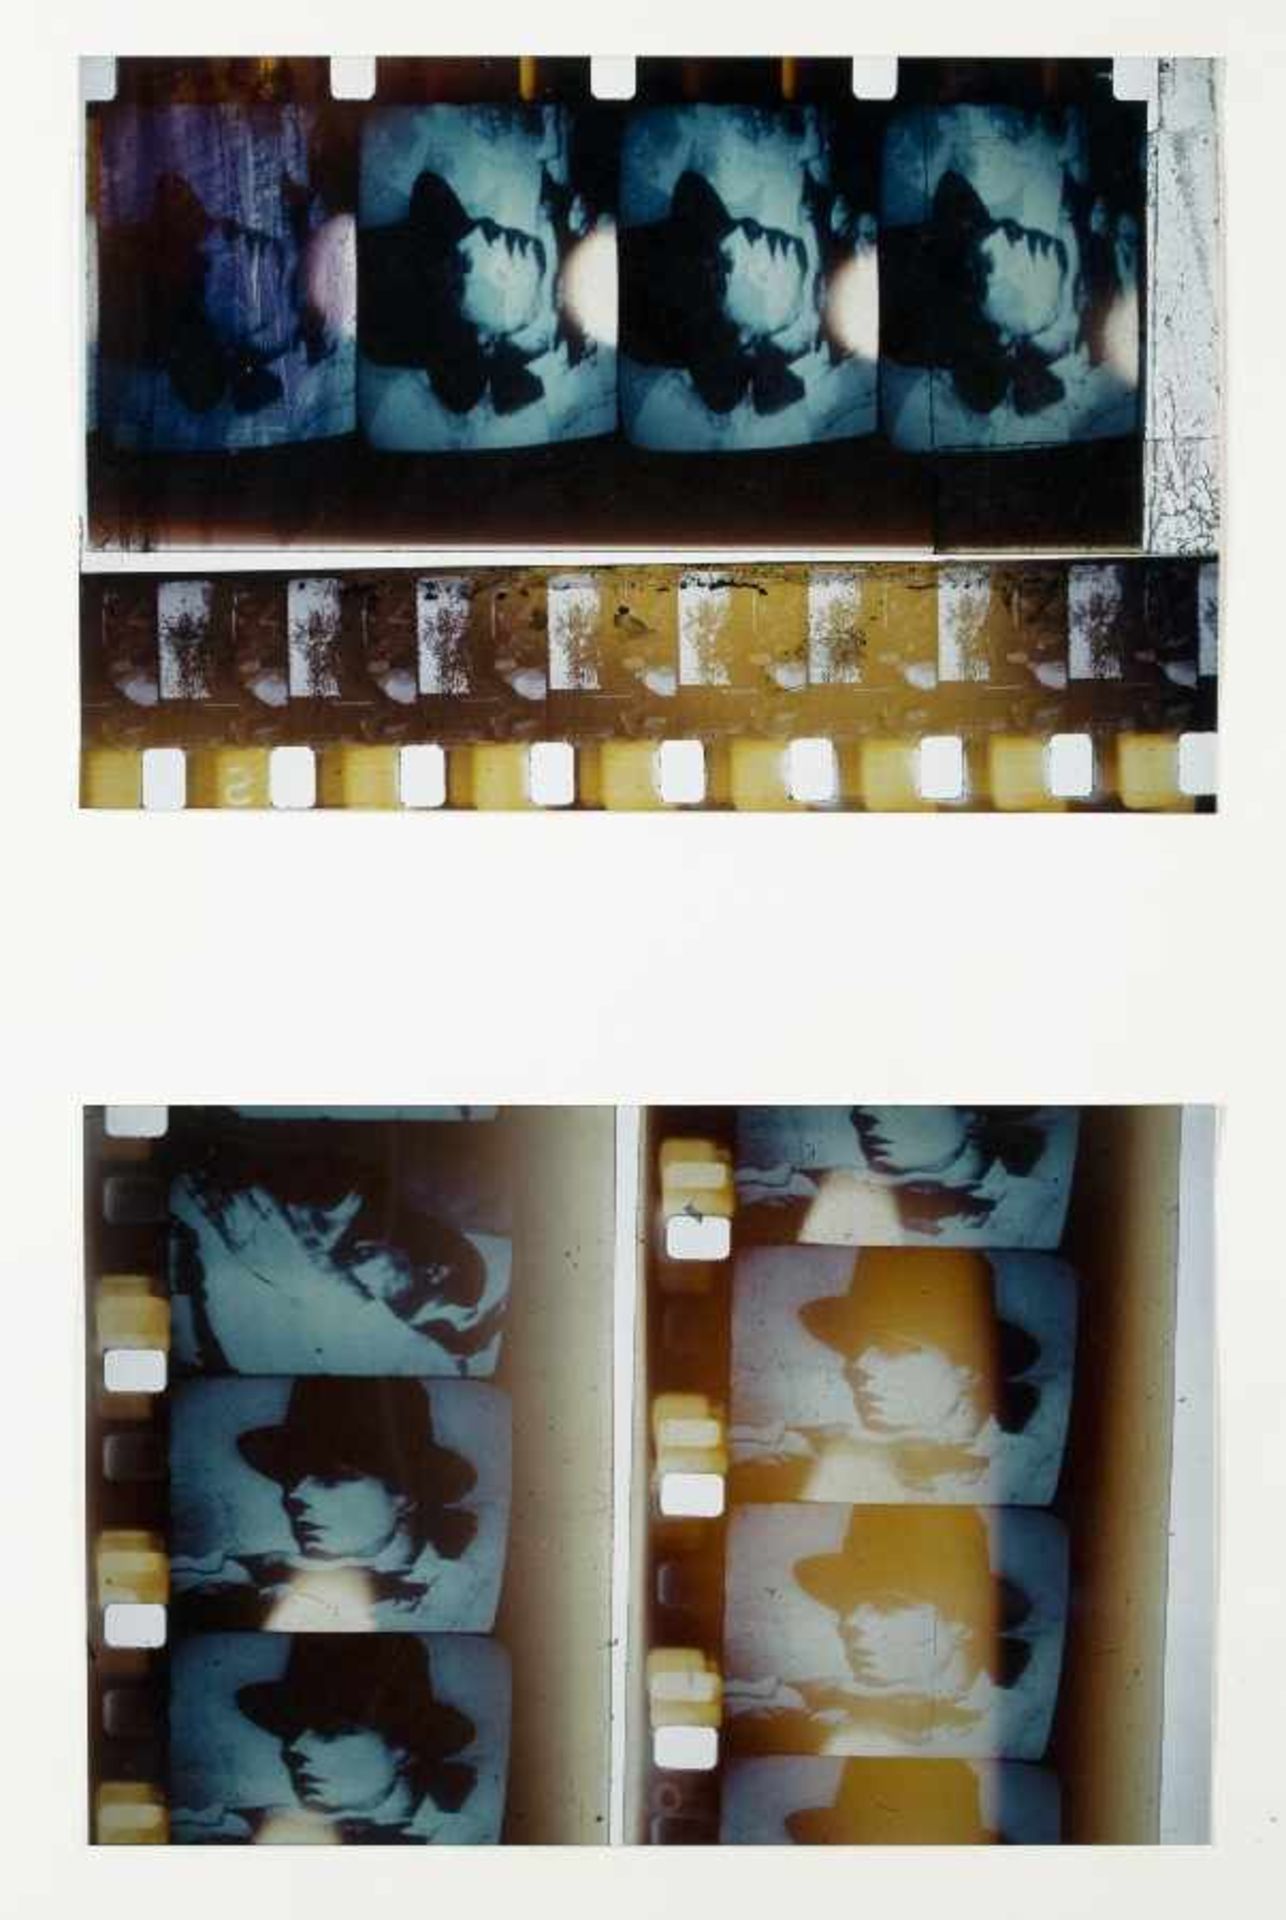 Düsseldorfer Fotograf 2. Hälfte 20. Jh. Beuys on TV 2 Fotografien; H je 200 mm, B je 302 mm